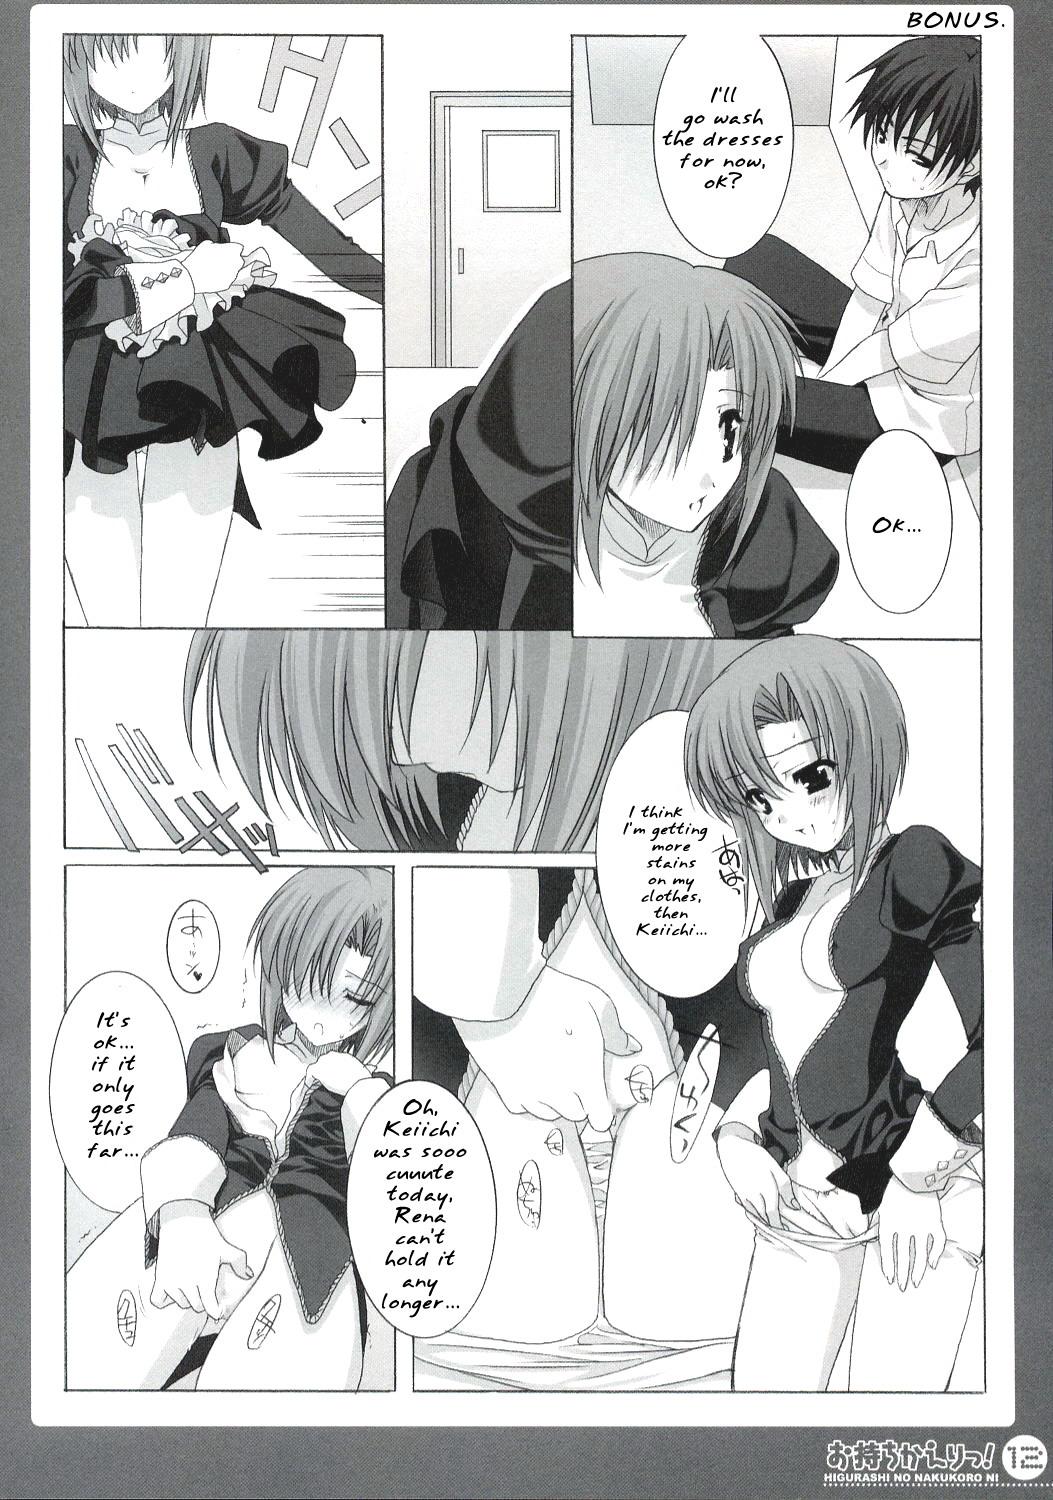 White Omochikaeri! - Higurashi no naku koro ni Nerd - Page 11